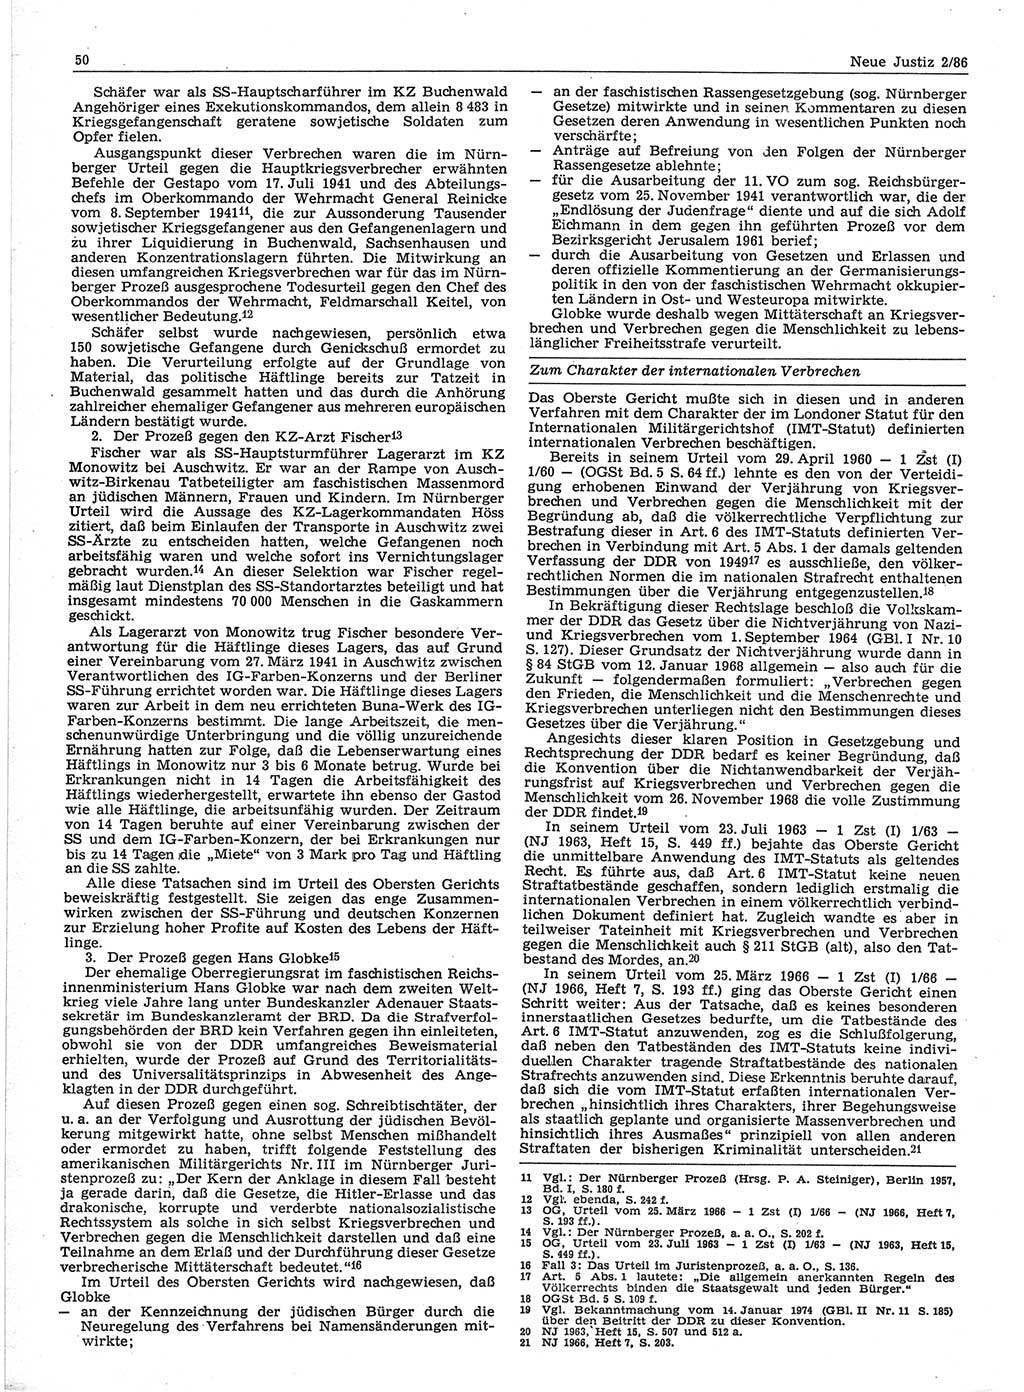 Neue Justiz (NJ), Zeitschrift für sozialistisches Recht und Gesetzlichkeit [Deutsche Demokratische Republik (DDR)], 40. Jahrgang 1986, Seite 50 (NJ DDR 1986, S. 50)